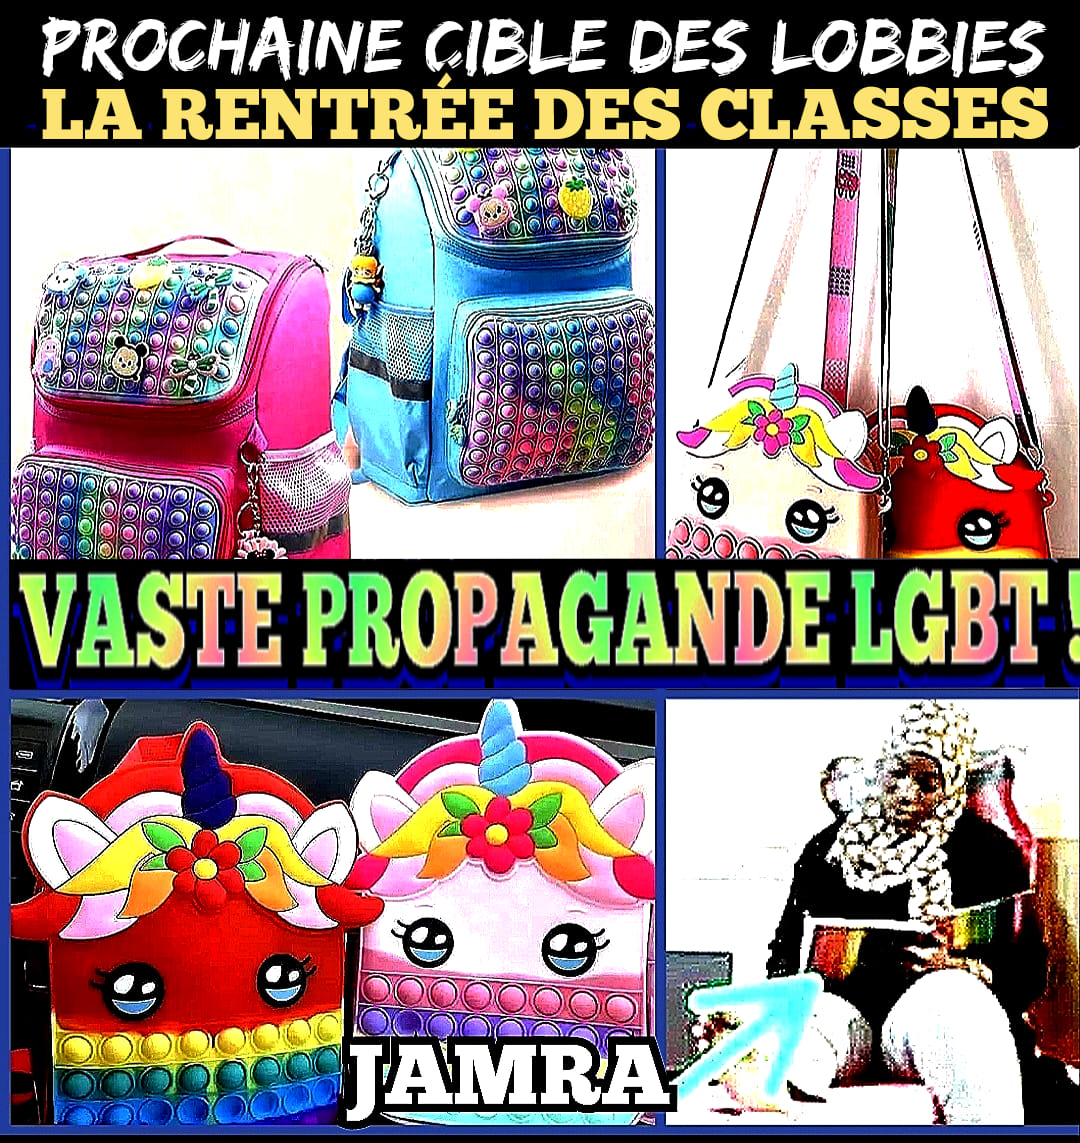 « Vaste propagande LGBT pour la rentrée scolaire : Jamra saisit les ministres du Commerce et de l'Intérieur ! » (Communiqué)